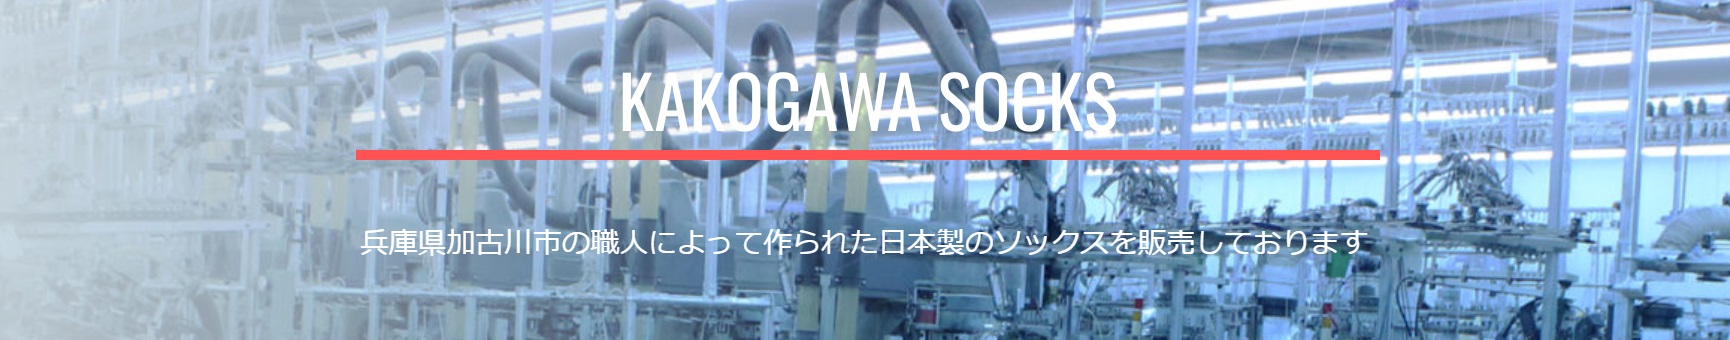 KAKOGAWA SOCKS ヘッダー画像